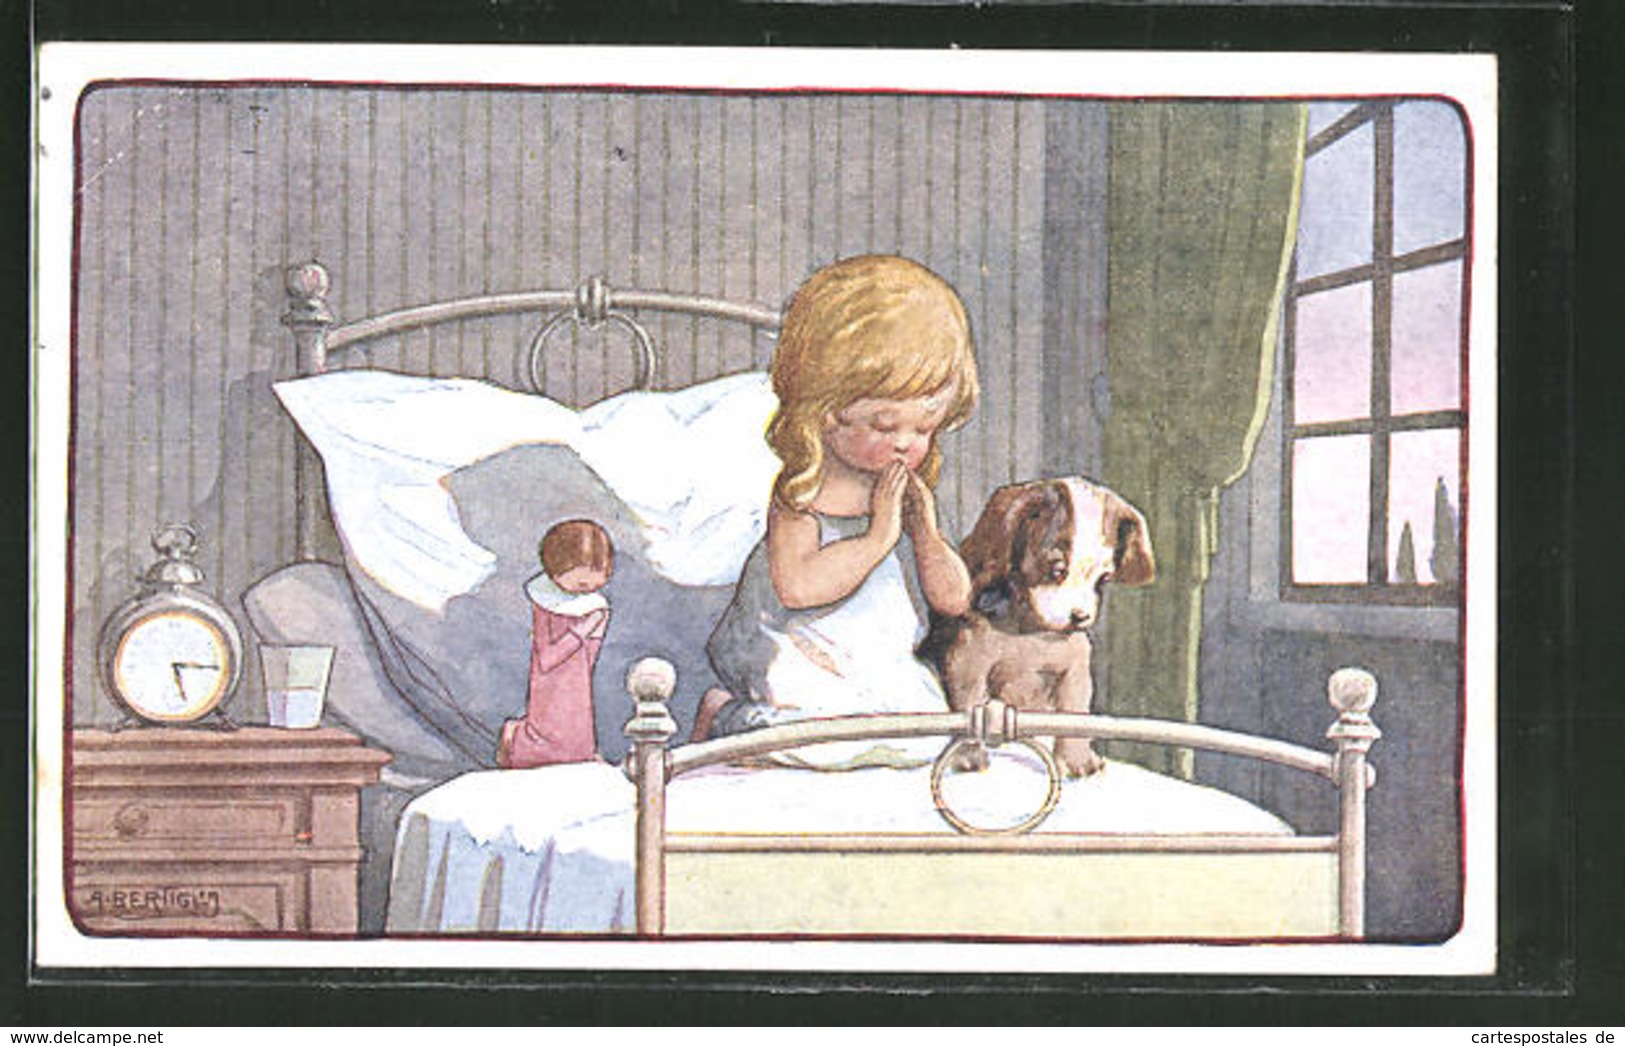 CPA Illustrateur A. Bertiglia: Betendes Fille, Puppe Et Chien - Bertiglia, A.